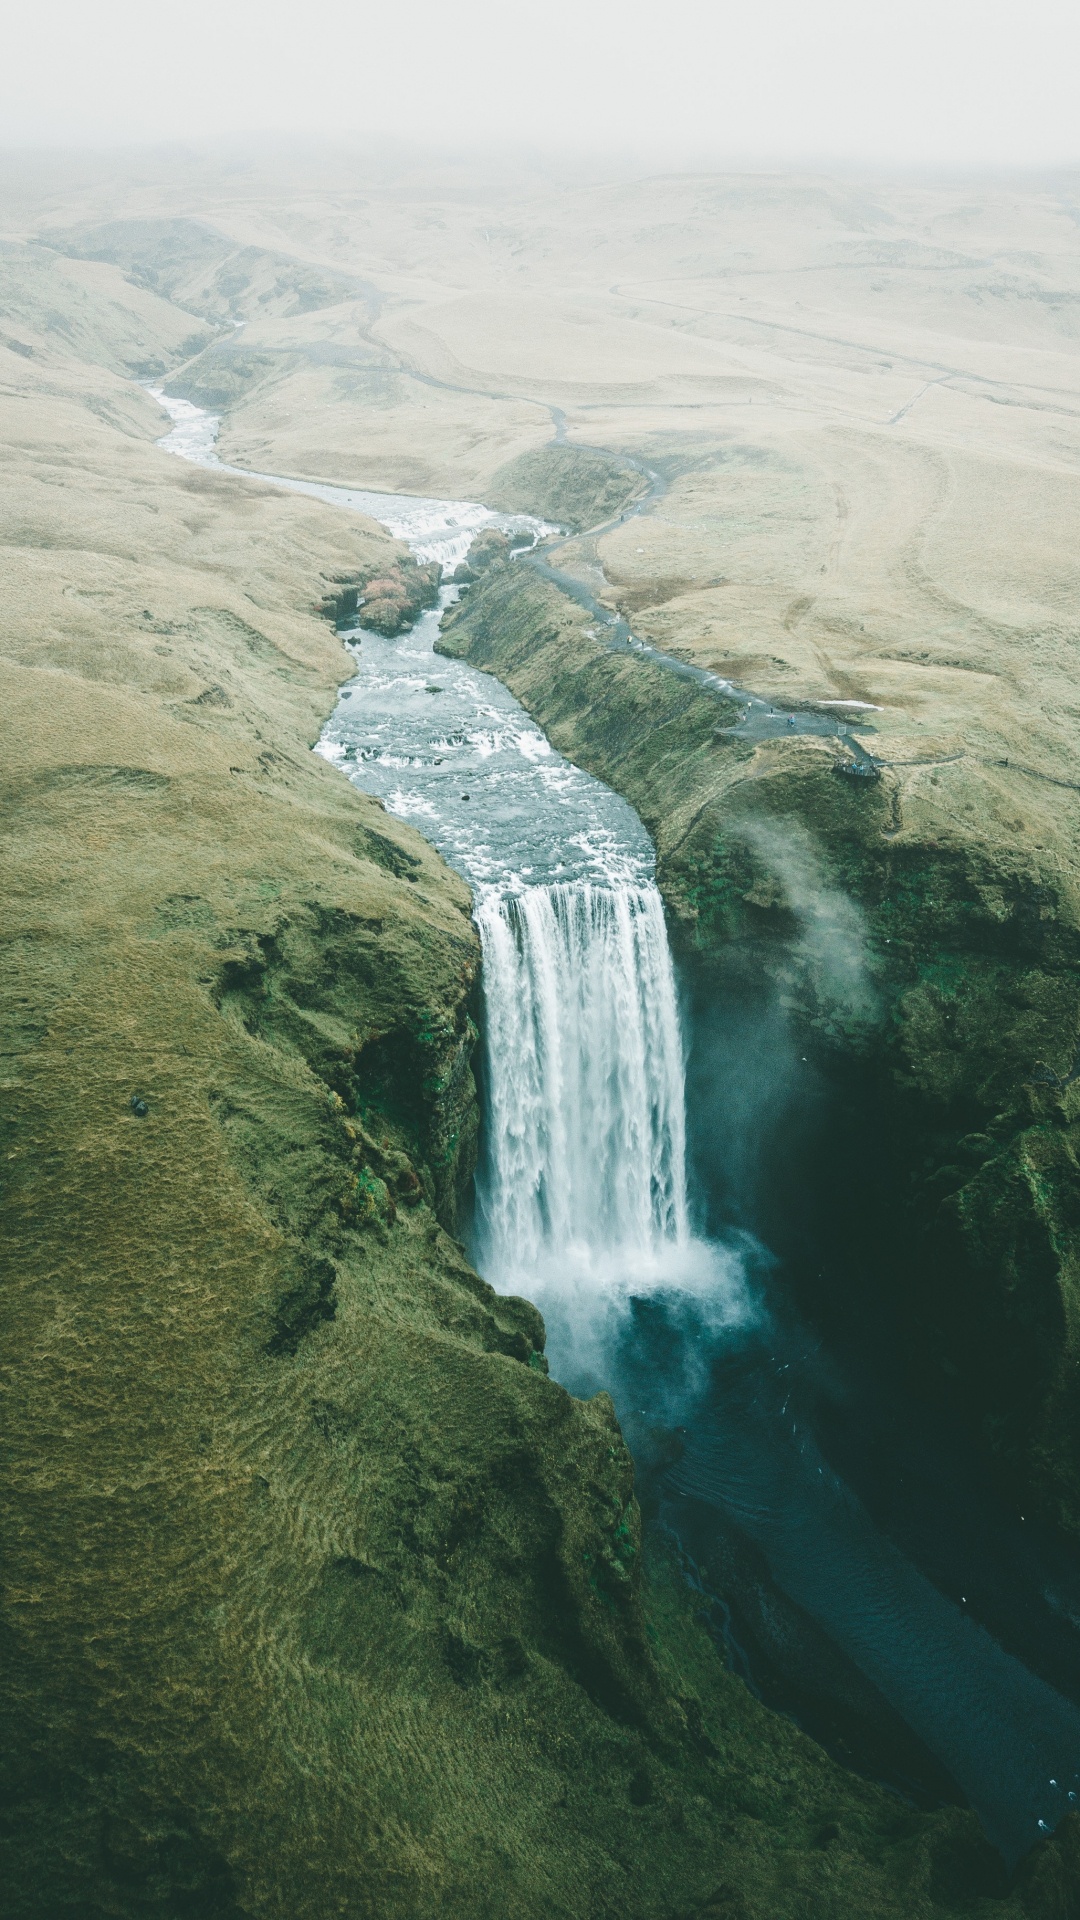 Wasserfall, Natur, Wasserressourcen, Gewässer, Wasser. Wallpaper in 1080x1920 Resolution